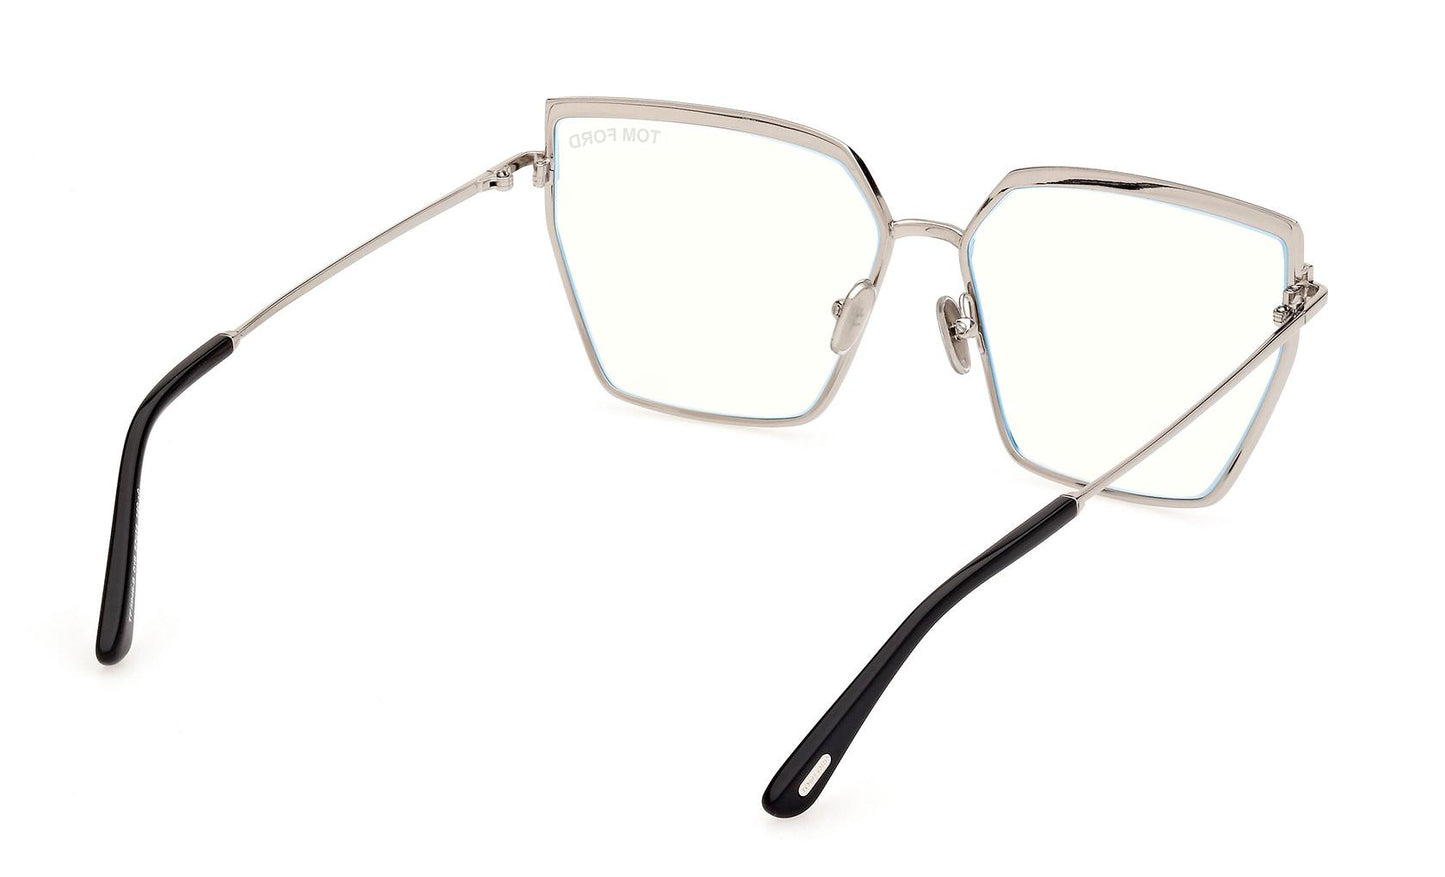 Tom Ford Eyeglasses FT5946/B 016